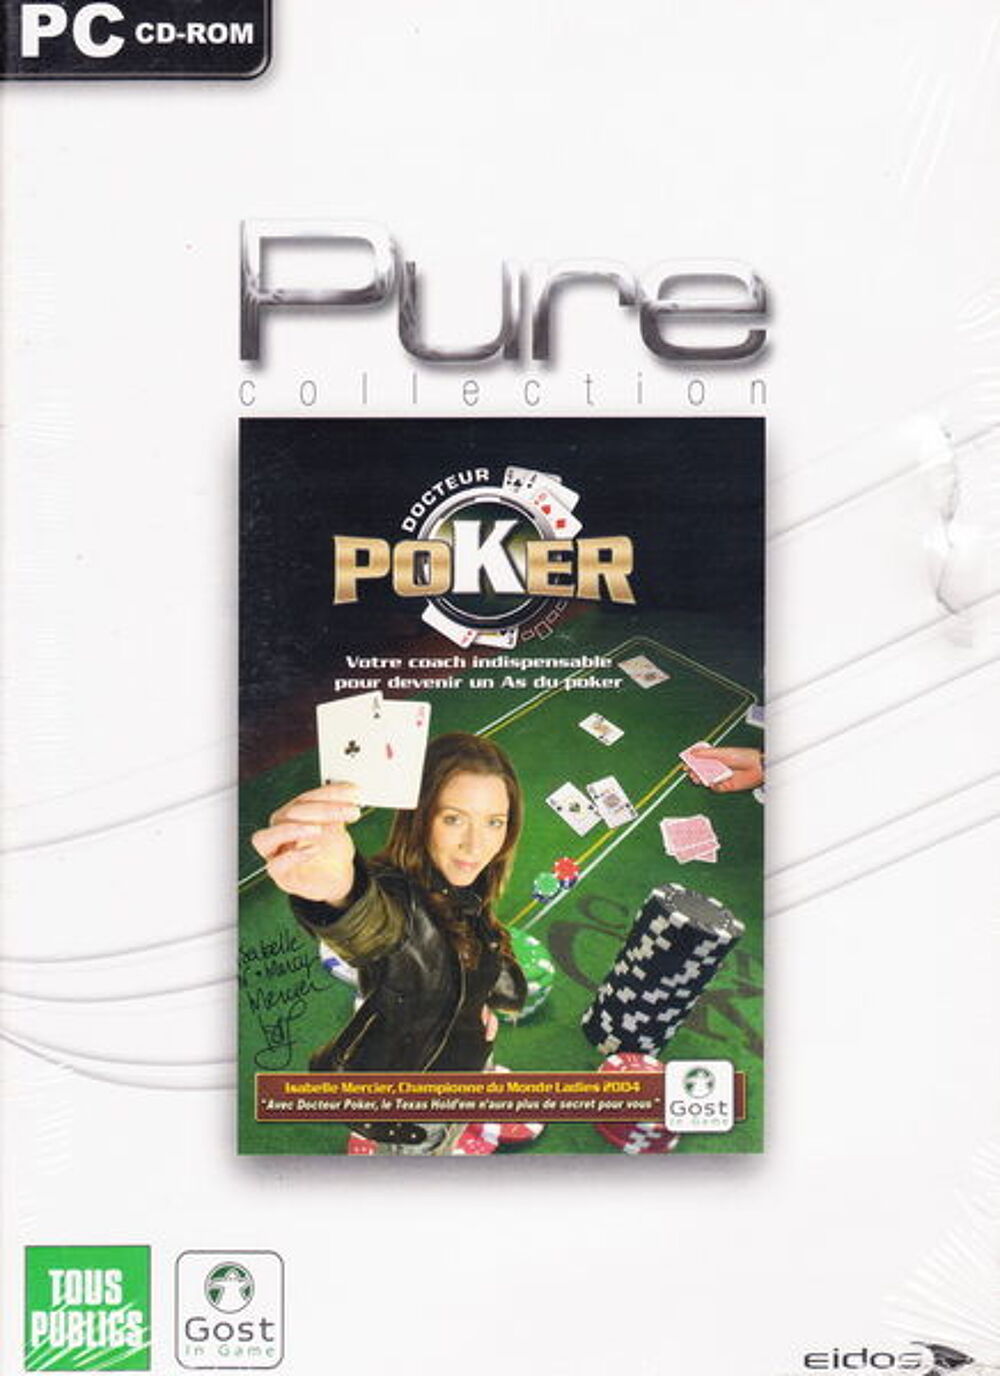 CD jeu PC Docteur Poker NEUF blister
Consoles et jeux vidos